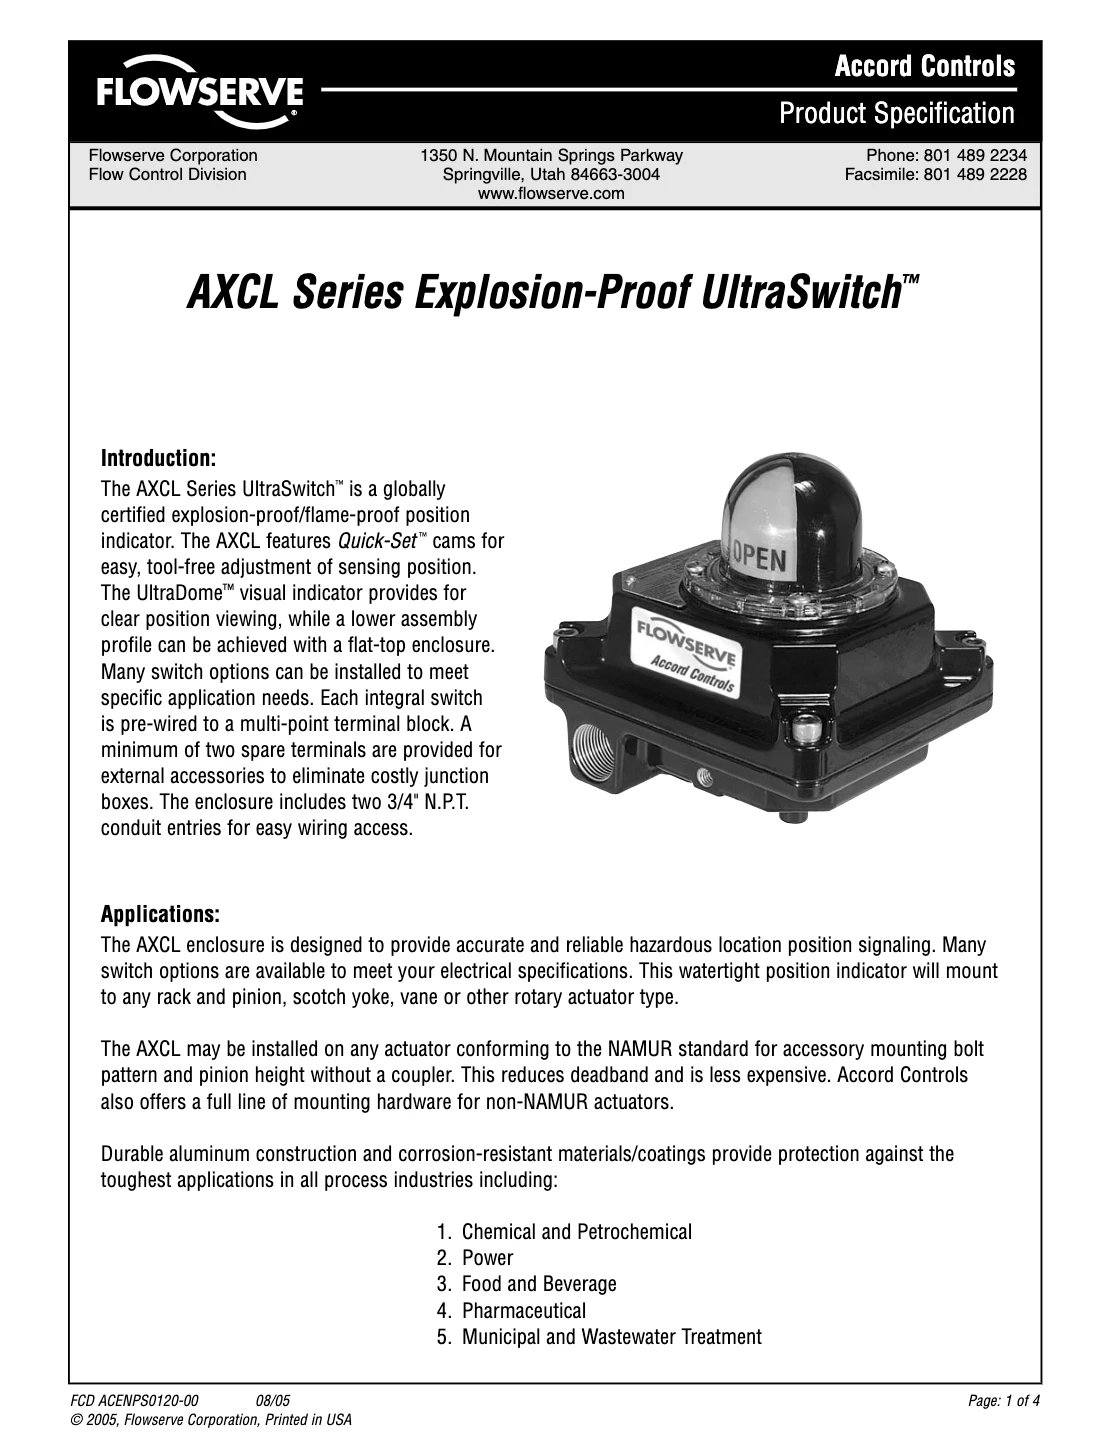 Accord AXCL 系列防爆产品规格